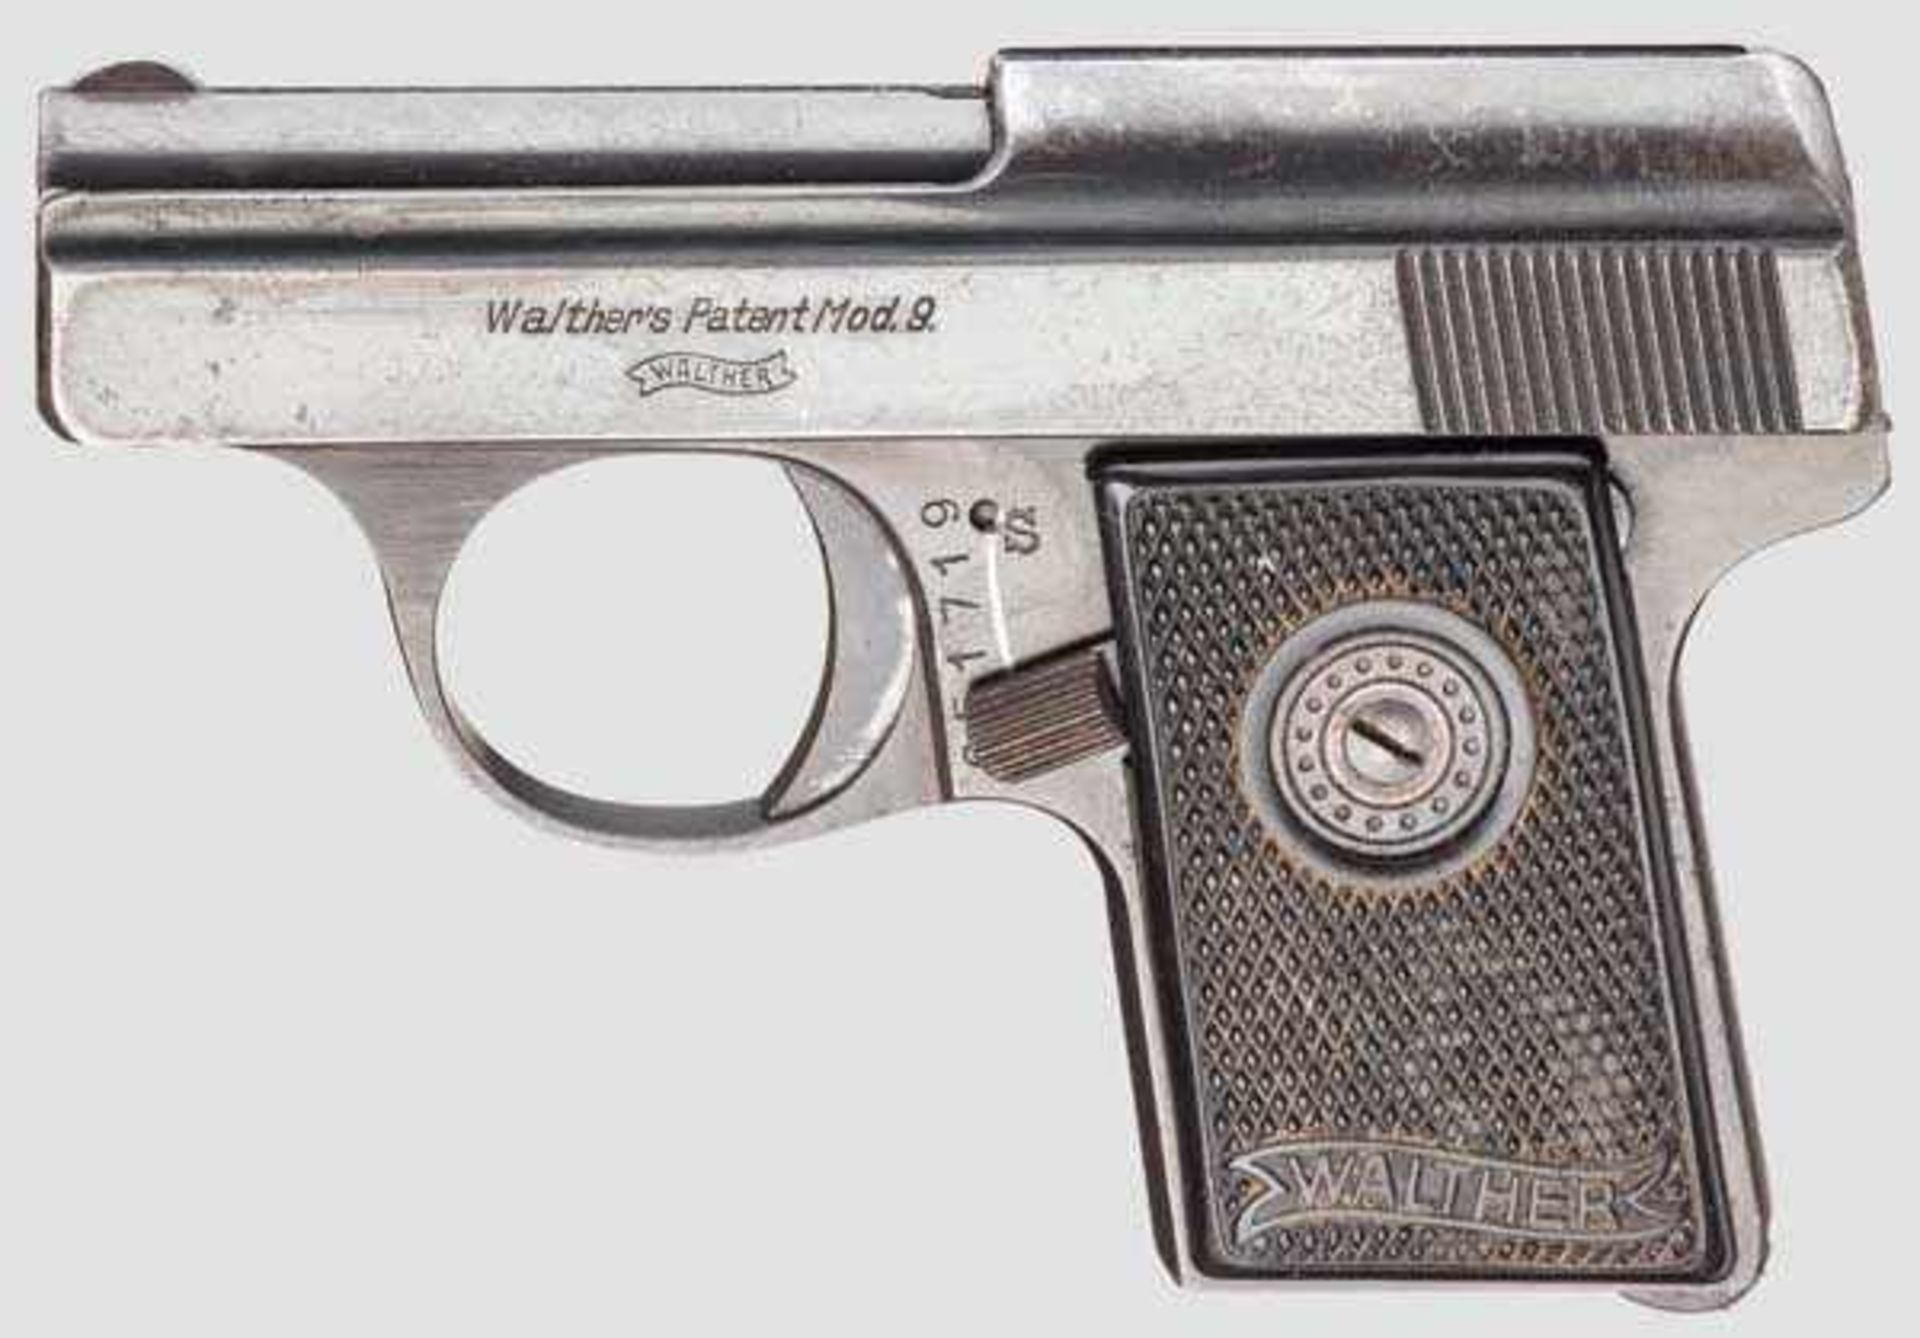 Walther Mod. 9, 4. Ausführung, mit Täschchen Kal. 6,35 mm, Nr. 651719. Lauf matt. Sechsschüssig.